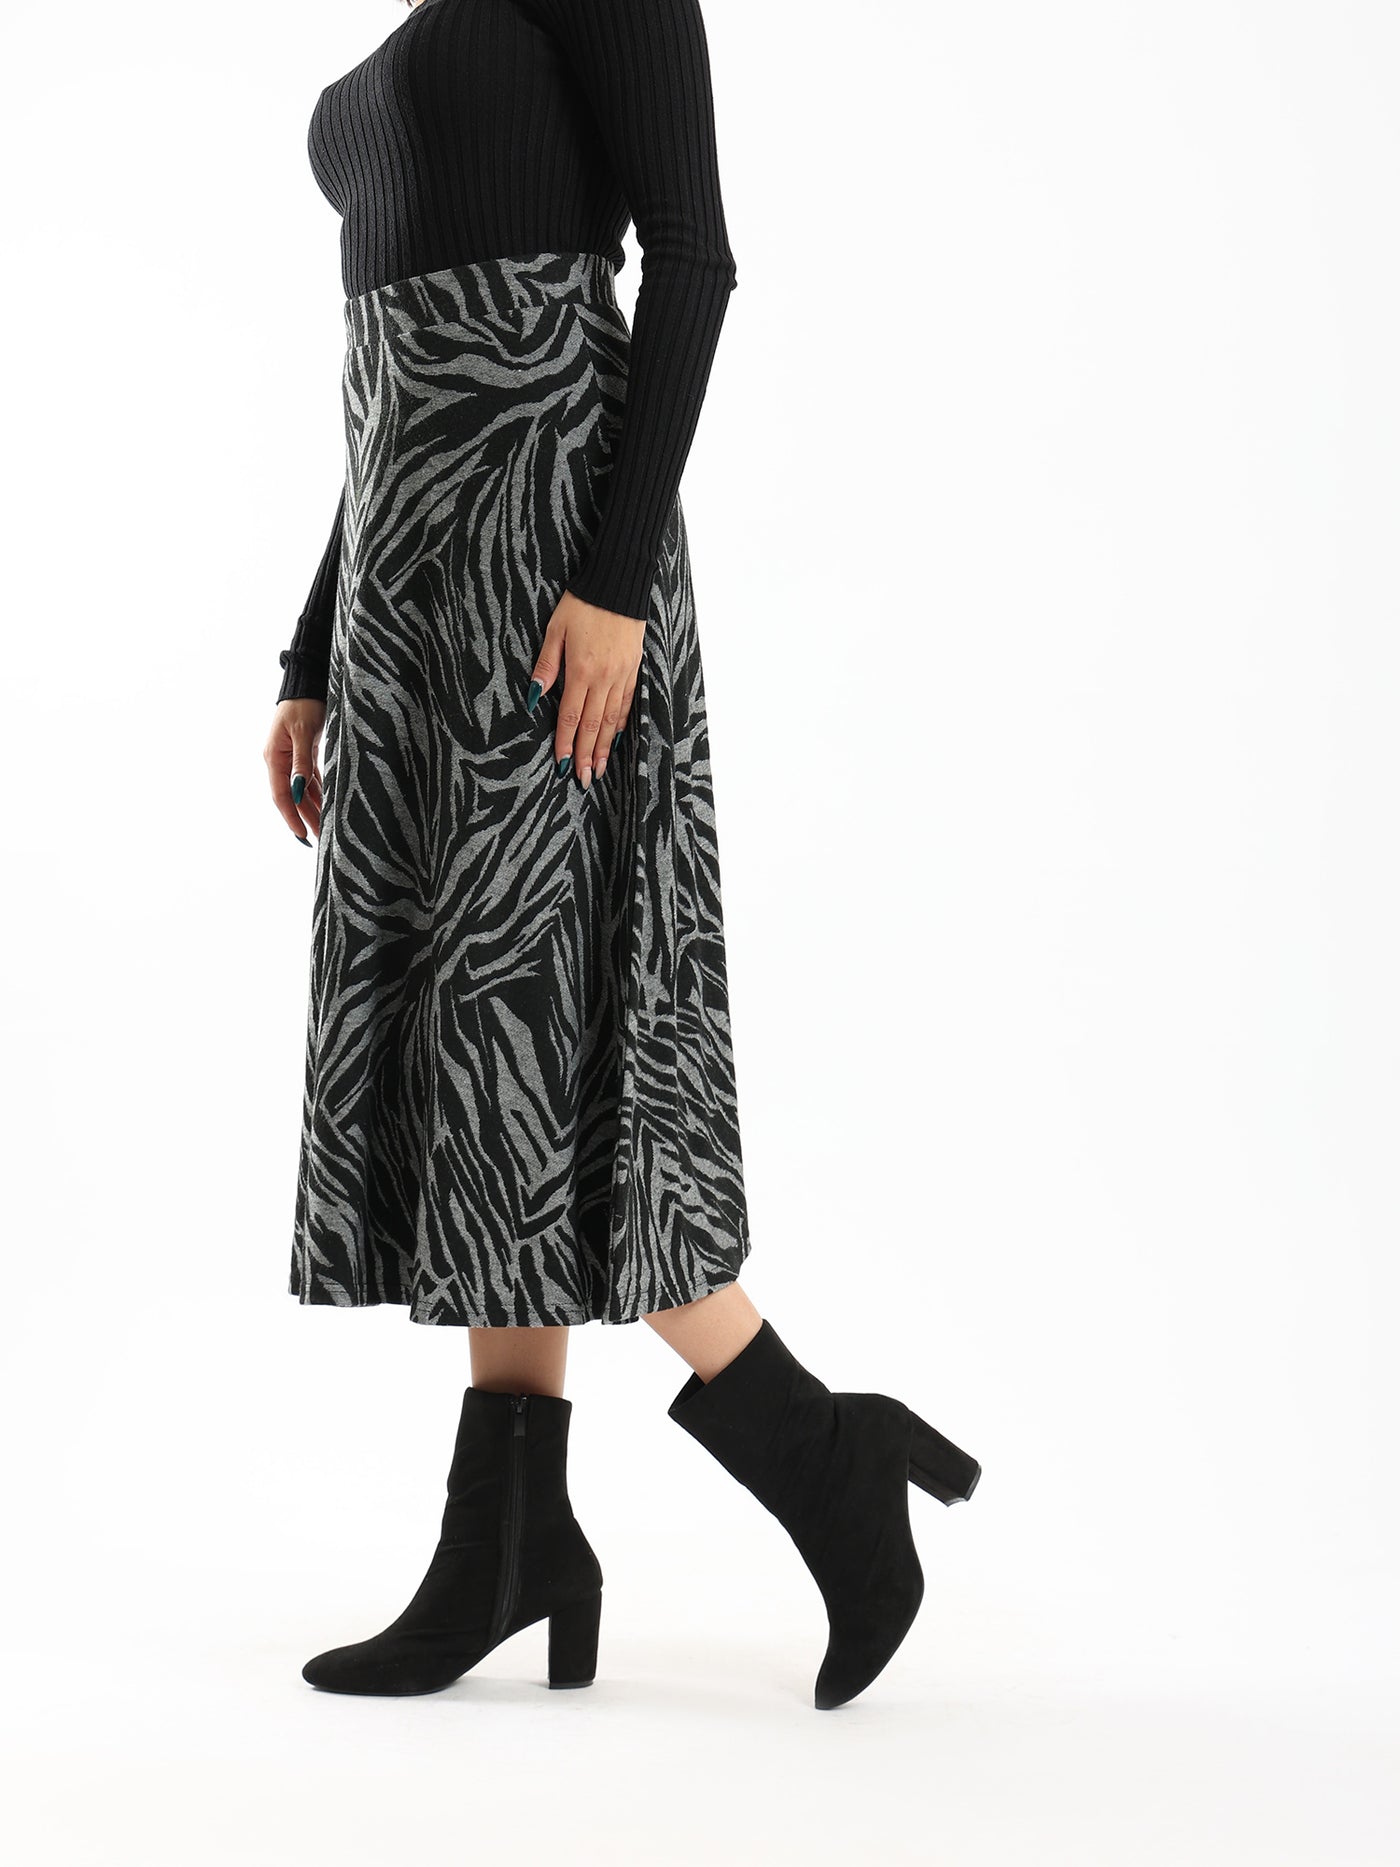 Skirt - Midi Length - Zebra Pattern